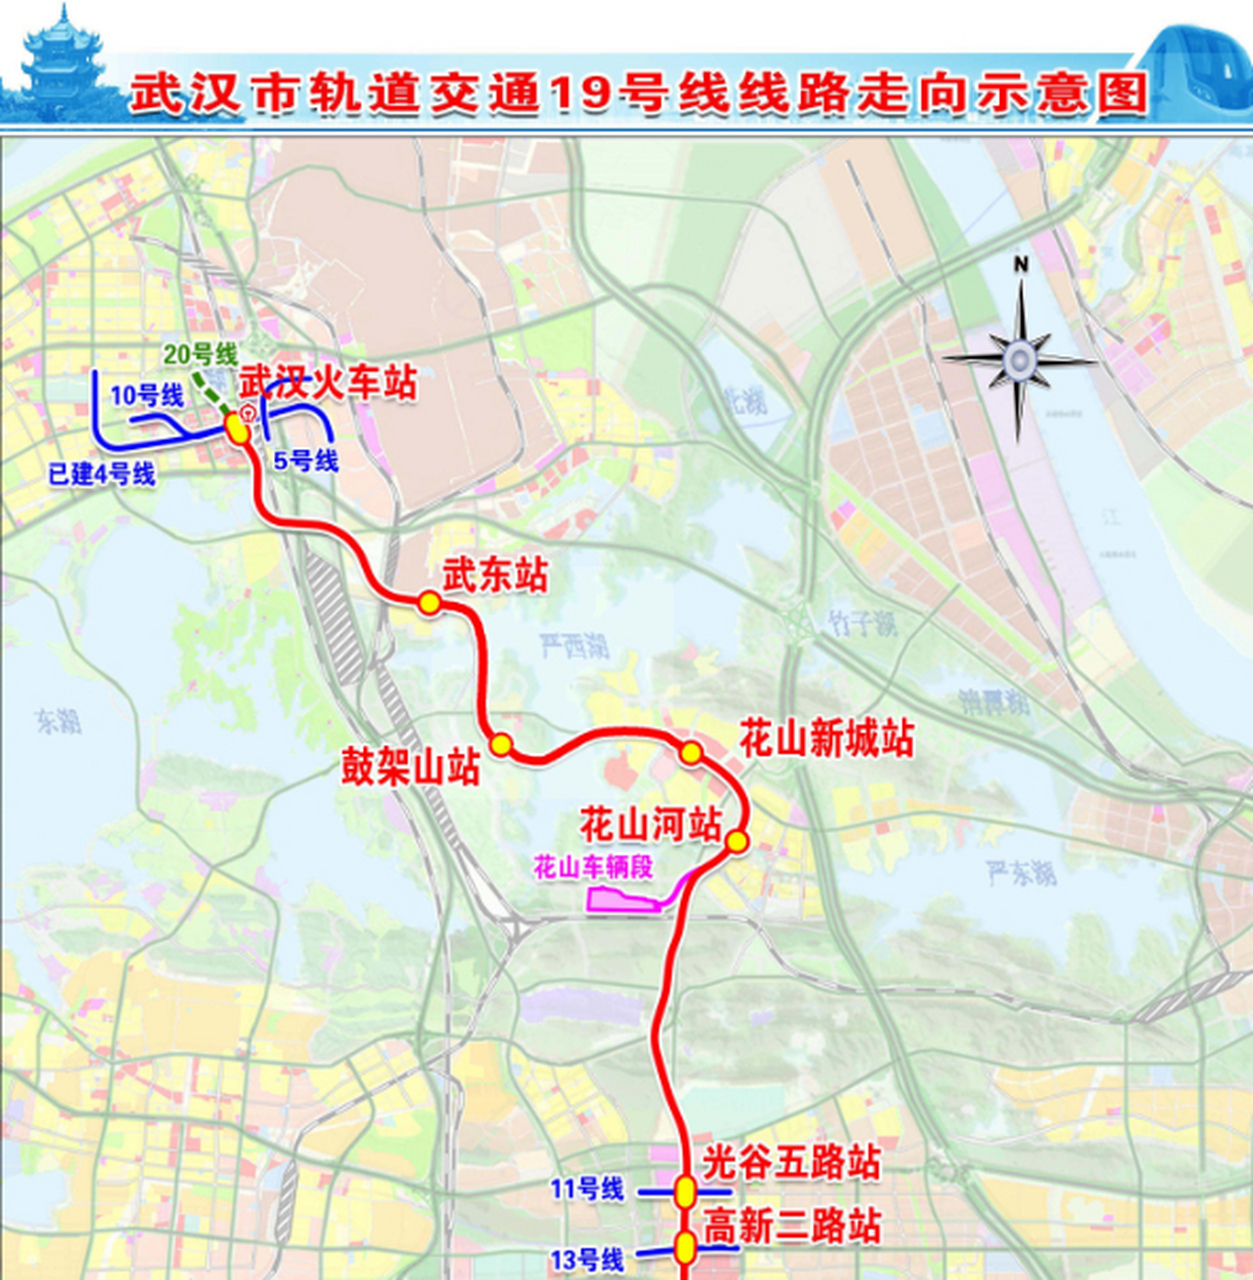 历经9个月昼夜奋战,武汉地铁19号线武东站至鼓架山站区间实现右线安全